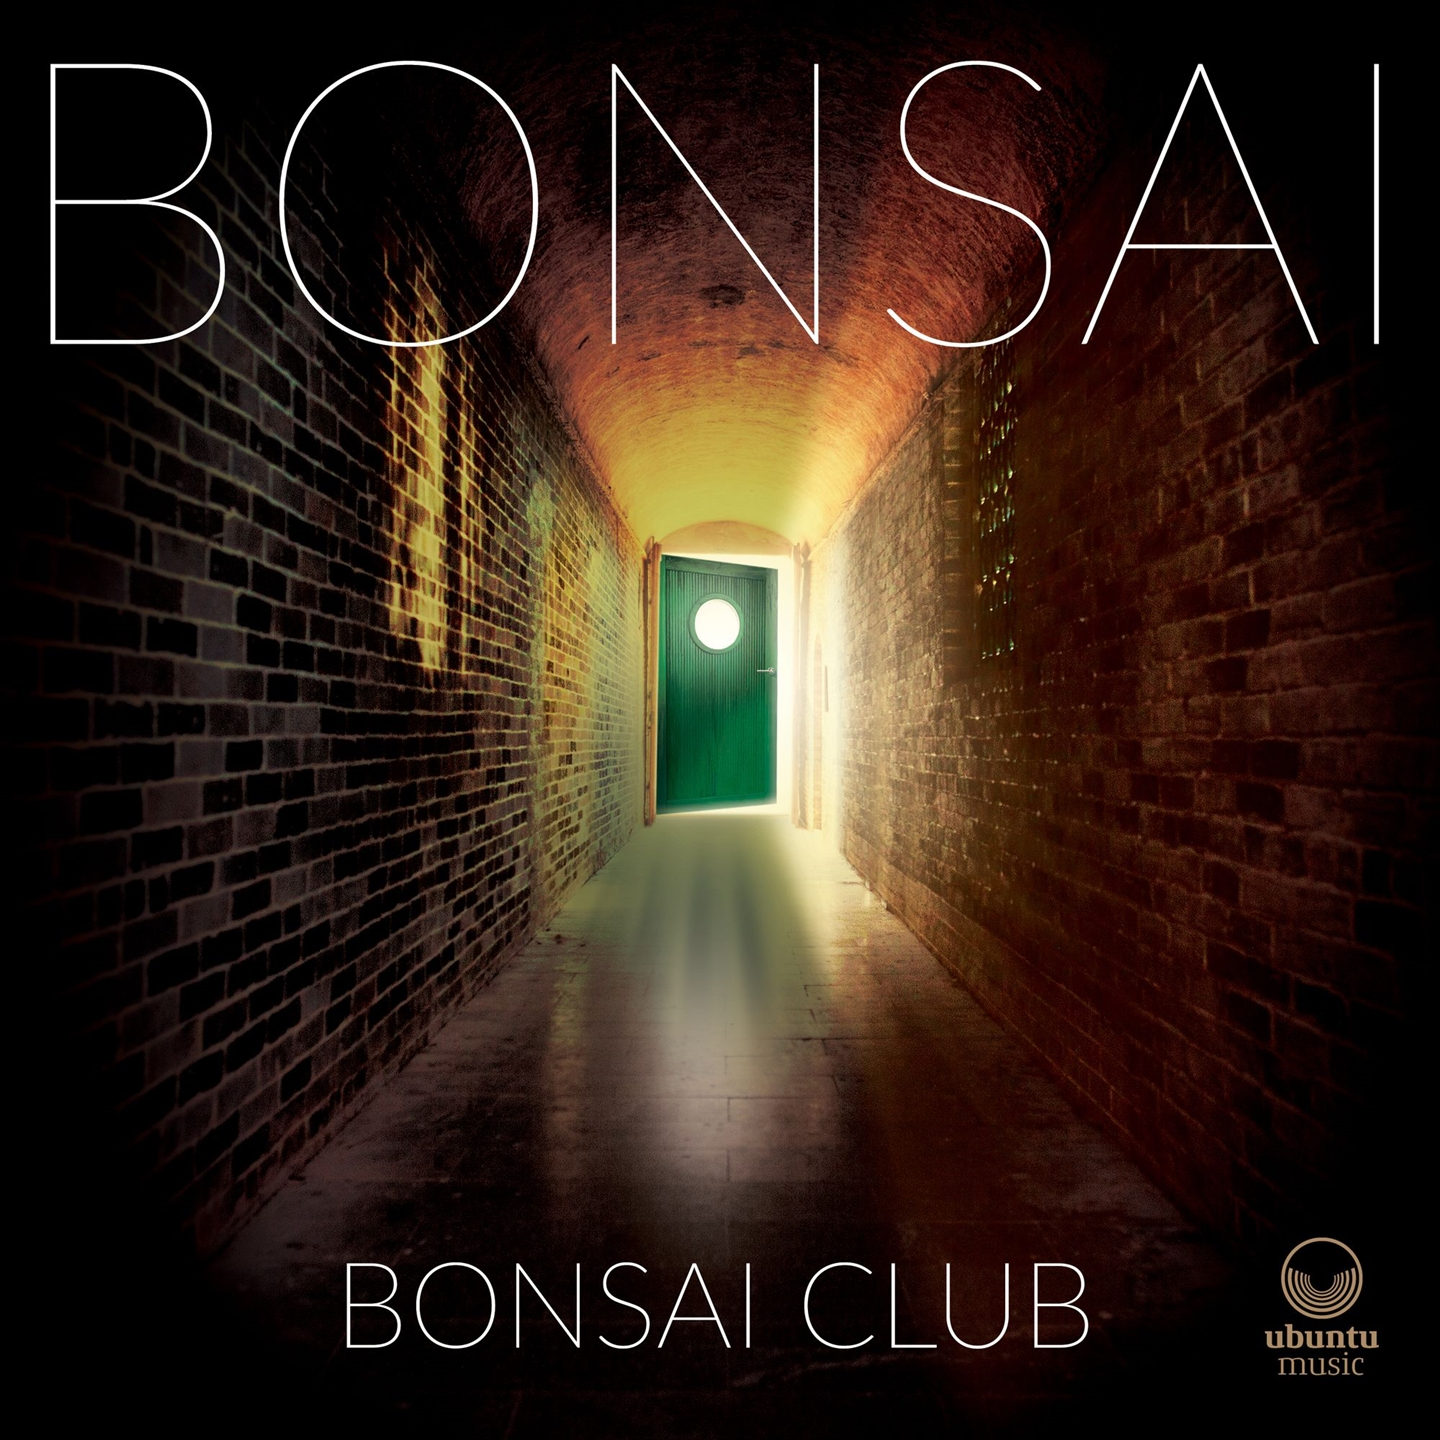 BONSAI CLUB